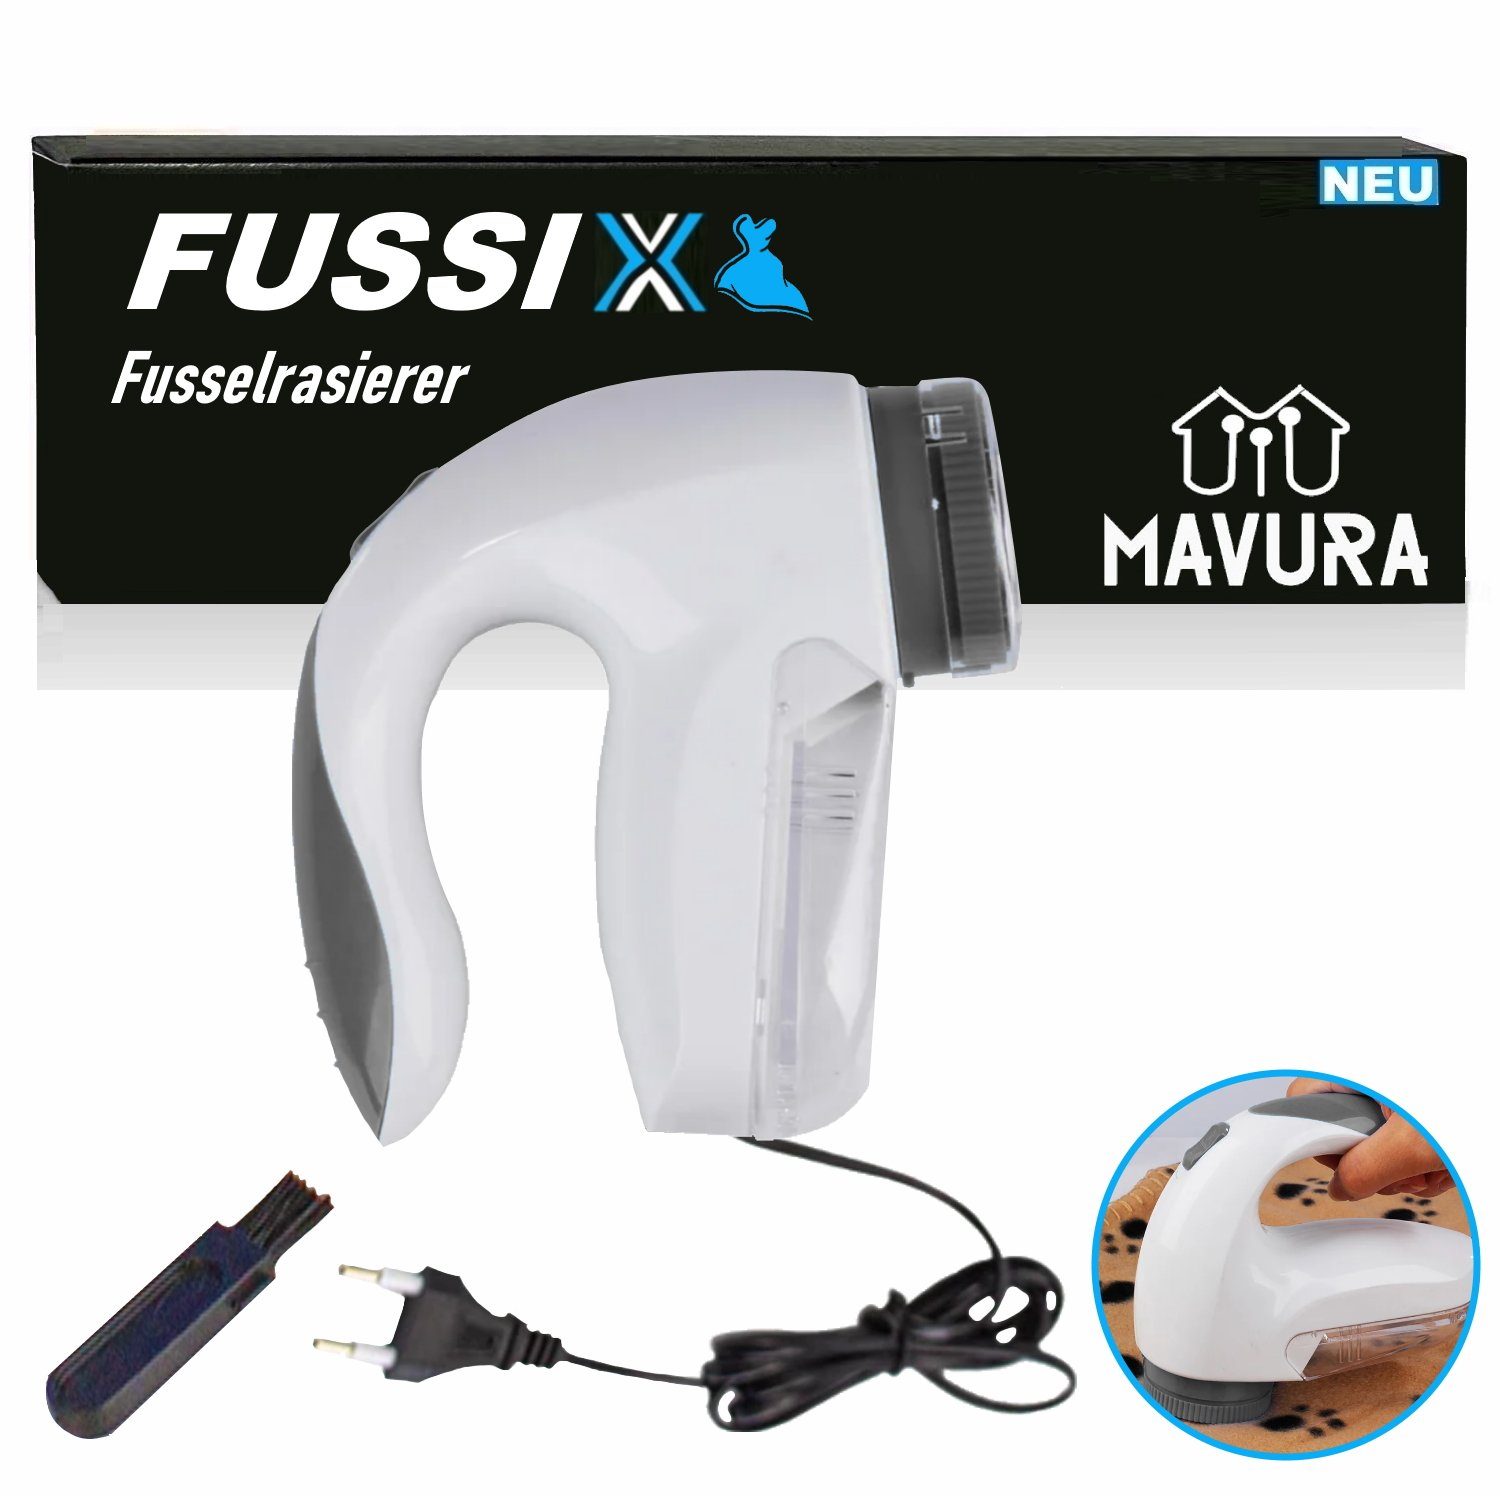 MAVURA Fusselrasierer FUSSIX Elektrische Fusselfräse Kleiderrasierer Wollrasierer, Flusenentferner mit Auffangbehälter